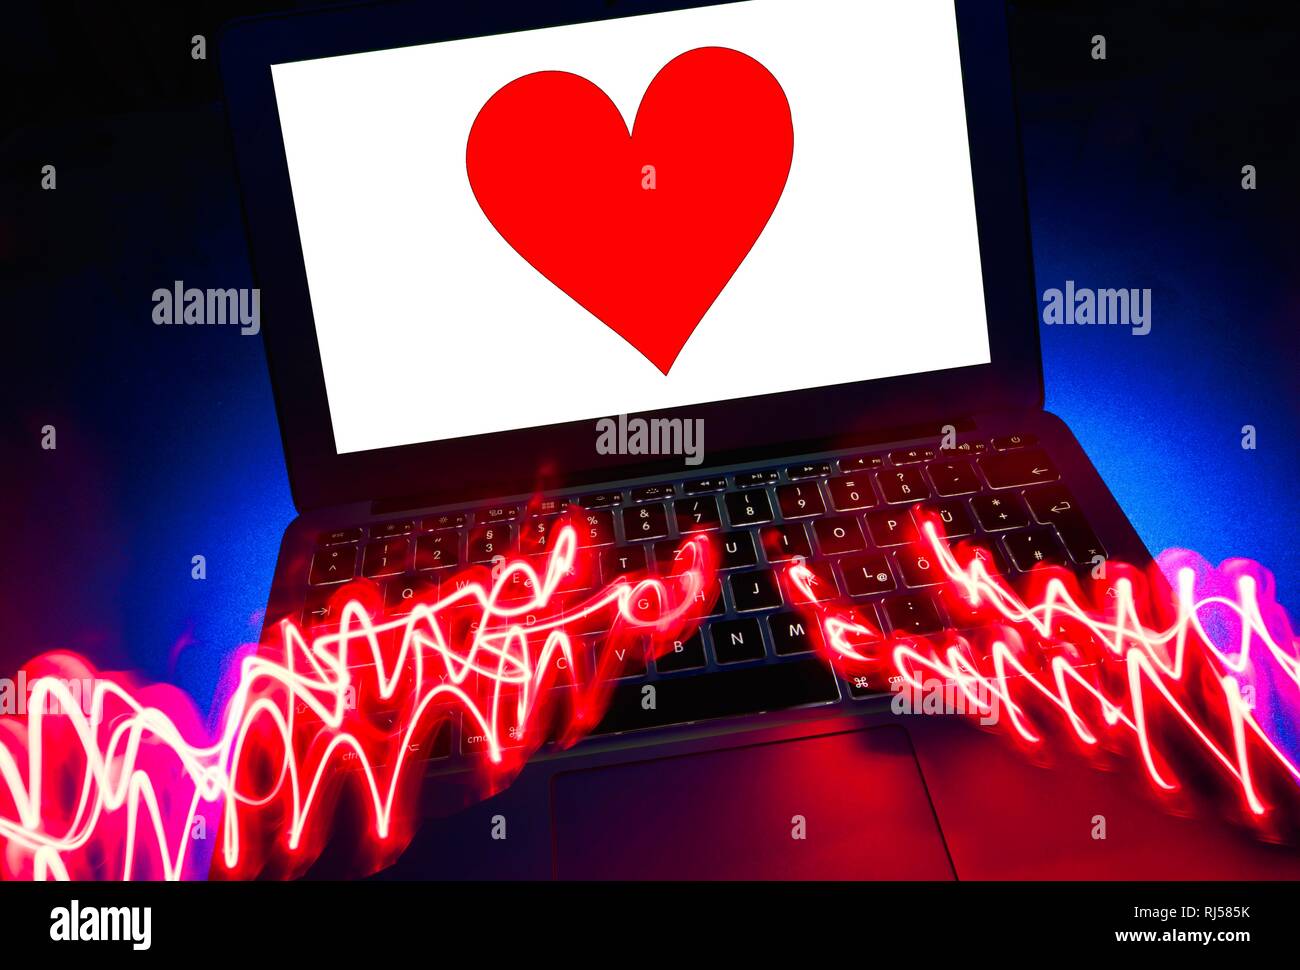 Imagen Símbolo de asociación, agencia dating agency, corazón rojo en la pantalla de un portátil, Alemania Foto de stock